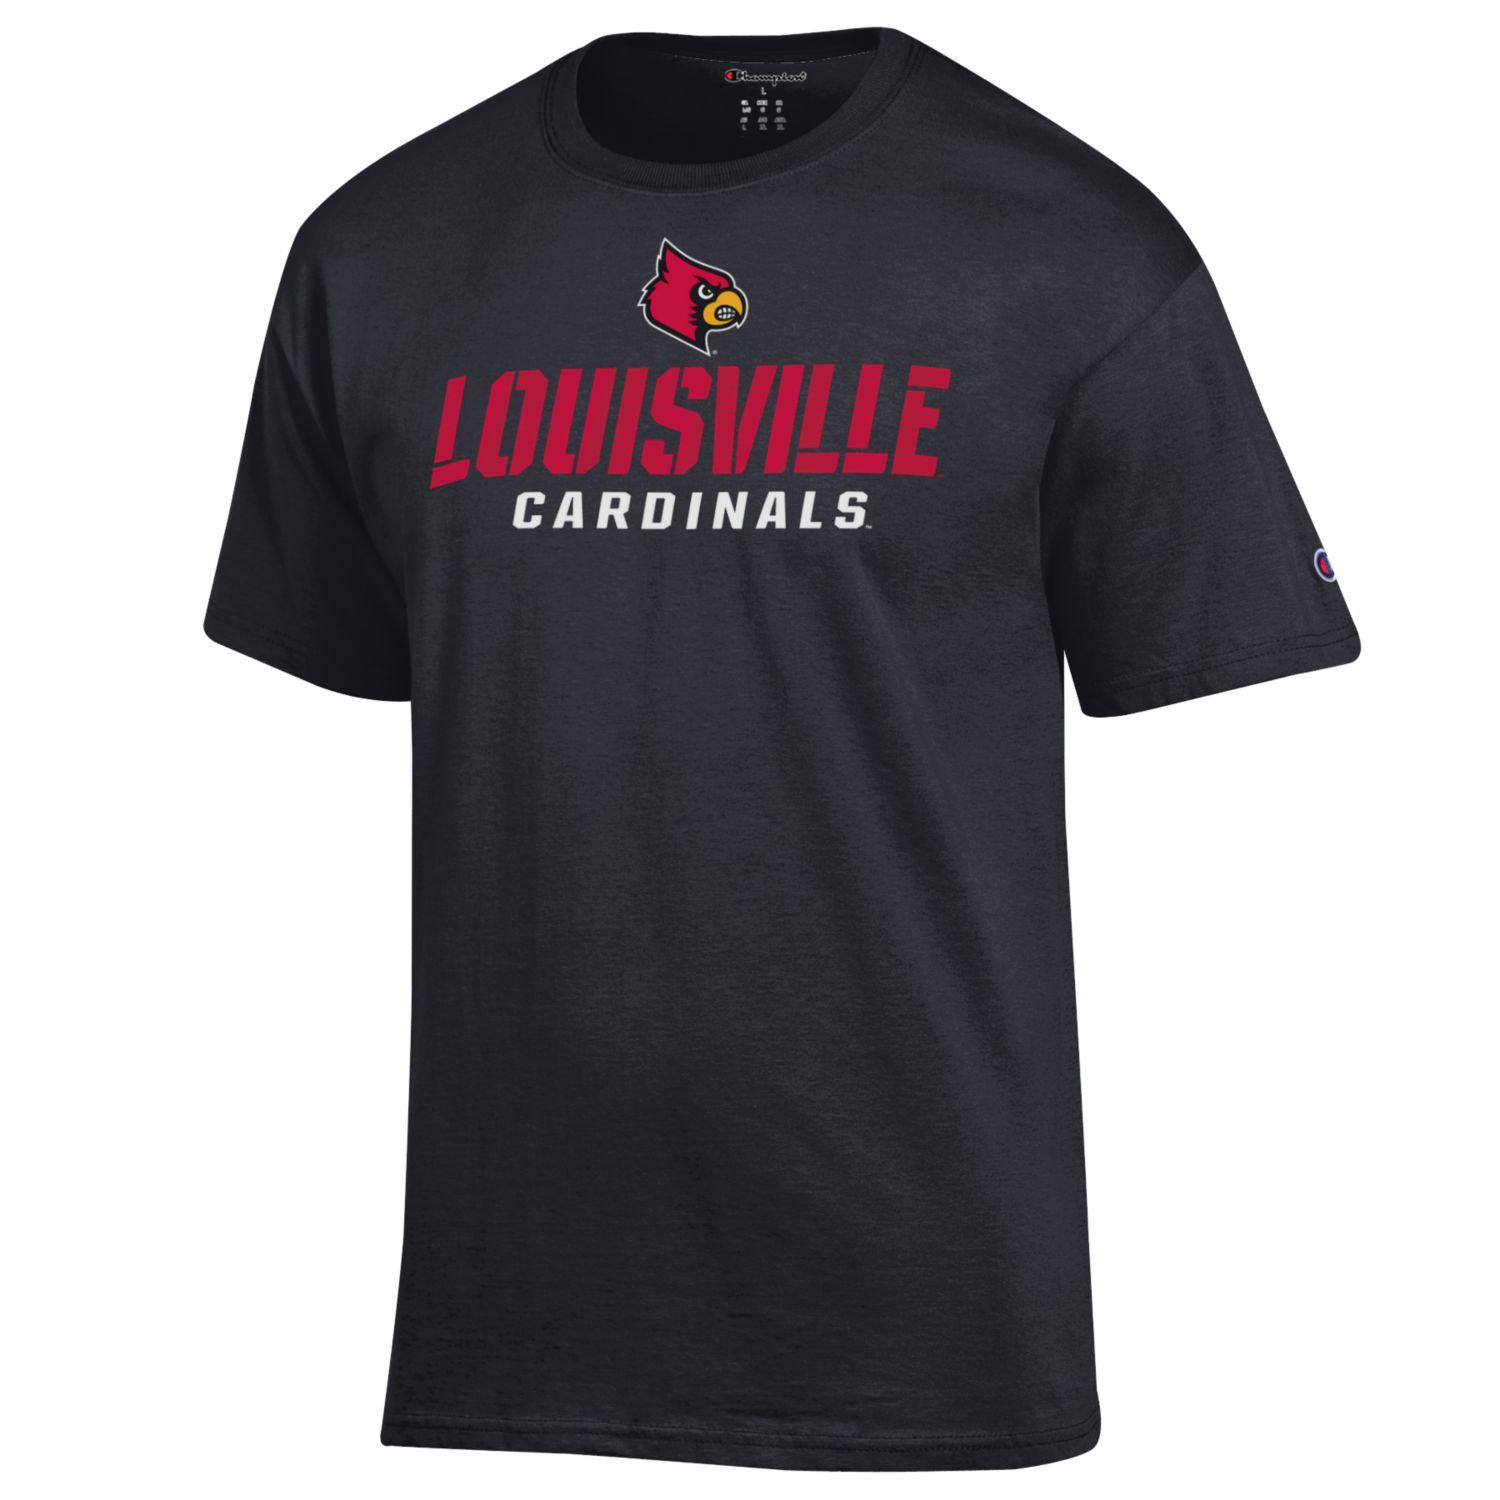 University of Louisville T-Shirts, Louisville Cardinals Tees